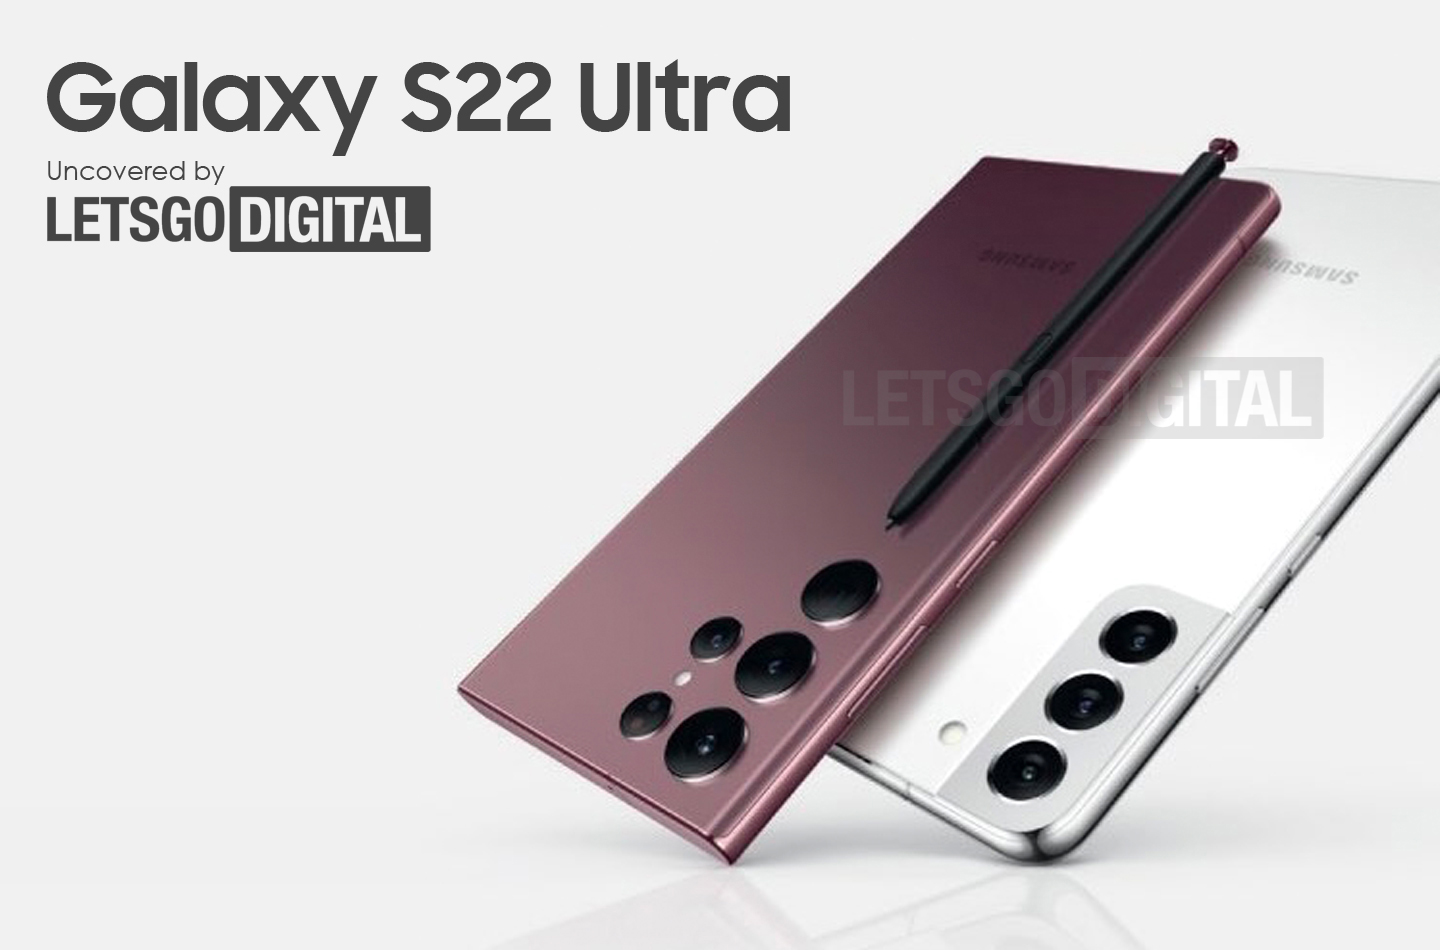 Samsung Galaxy S22 Ultra : l’affiche officielle fuite et révèle son design